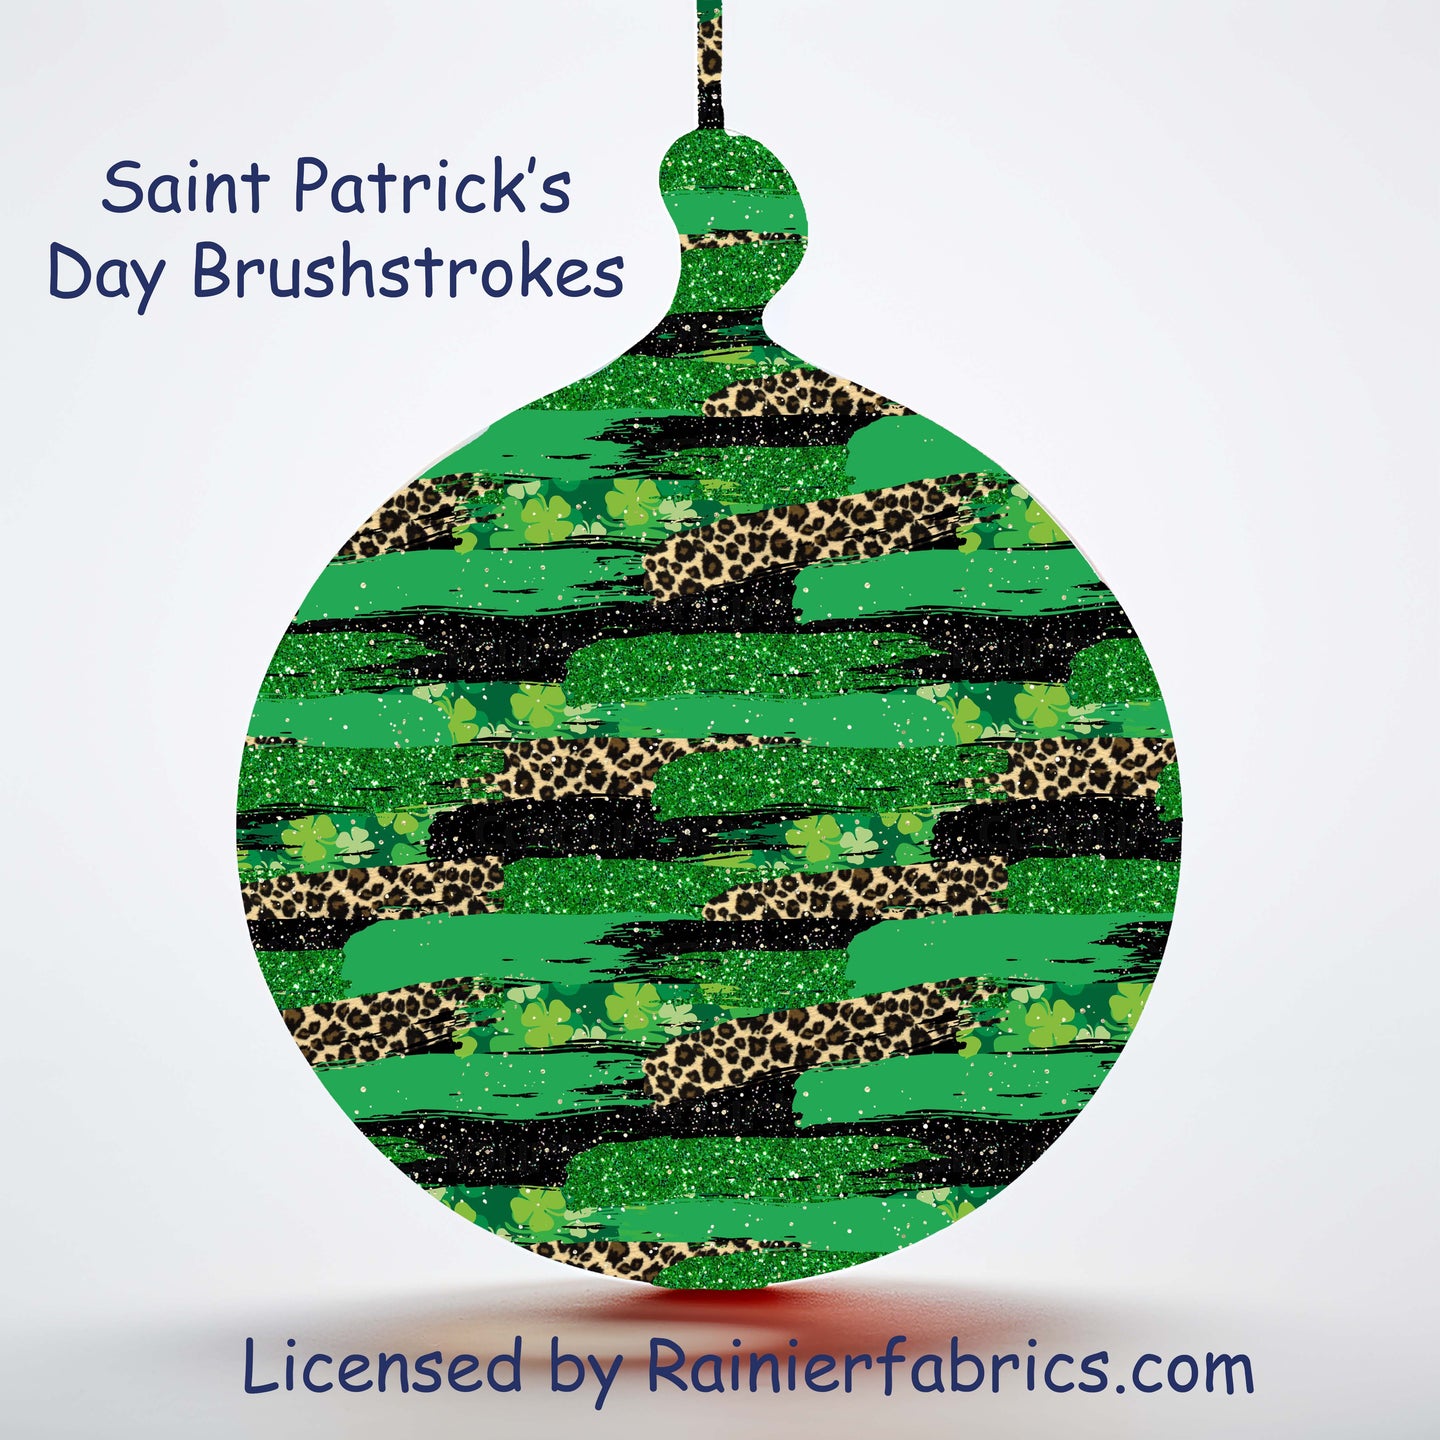 Saint Patrick’s Day Brushstrokes